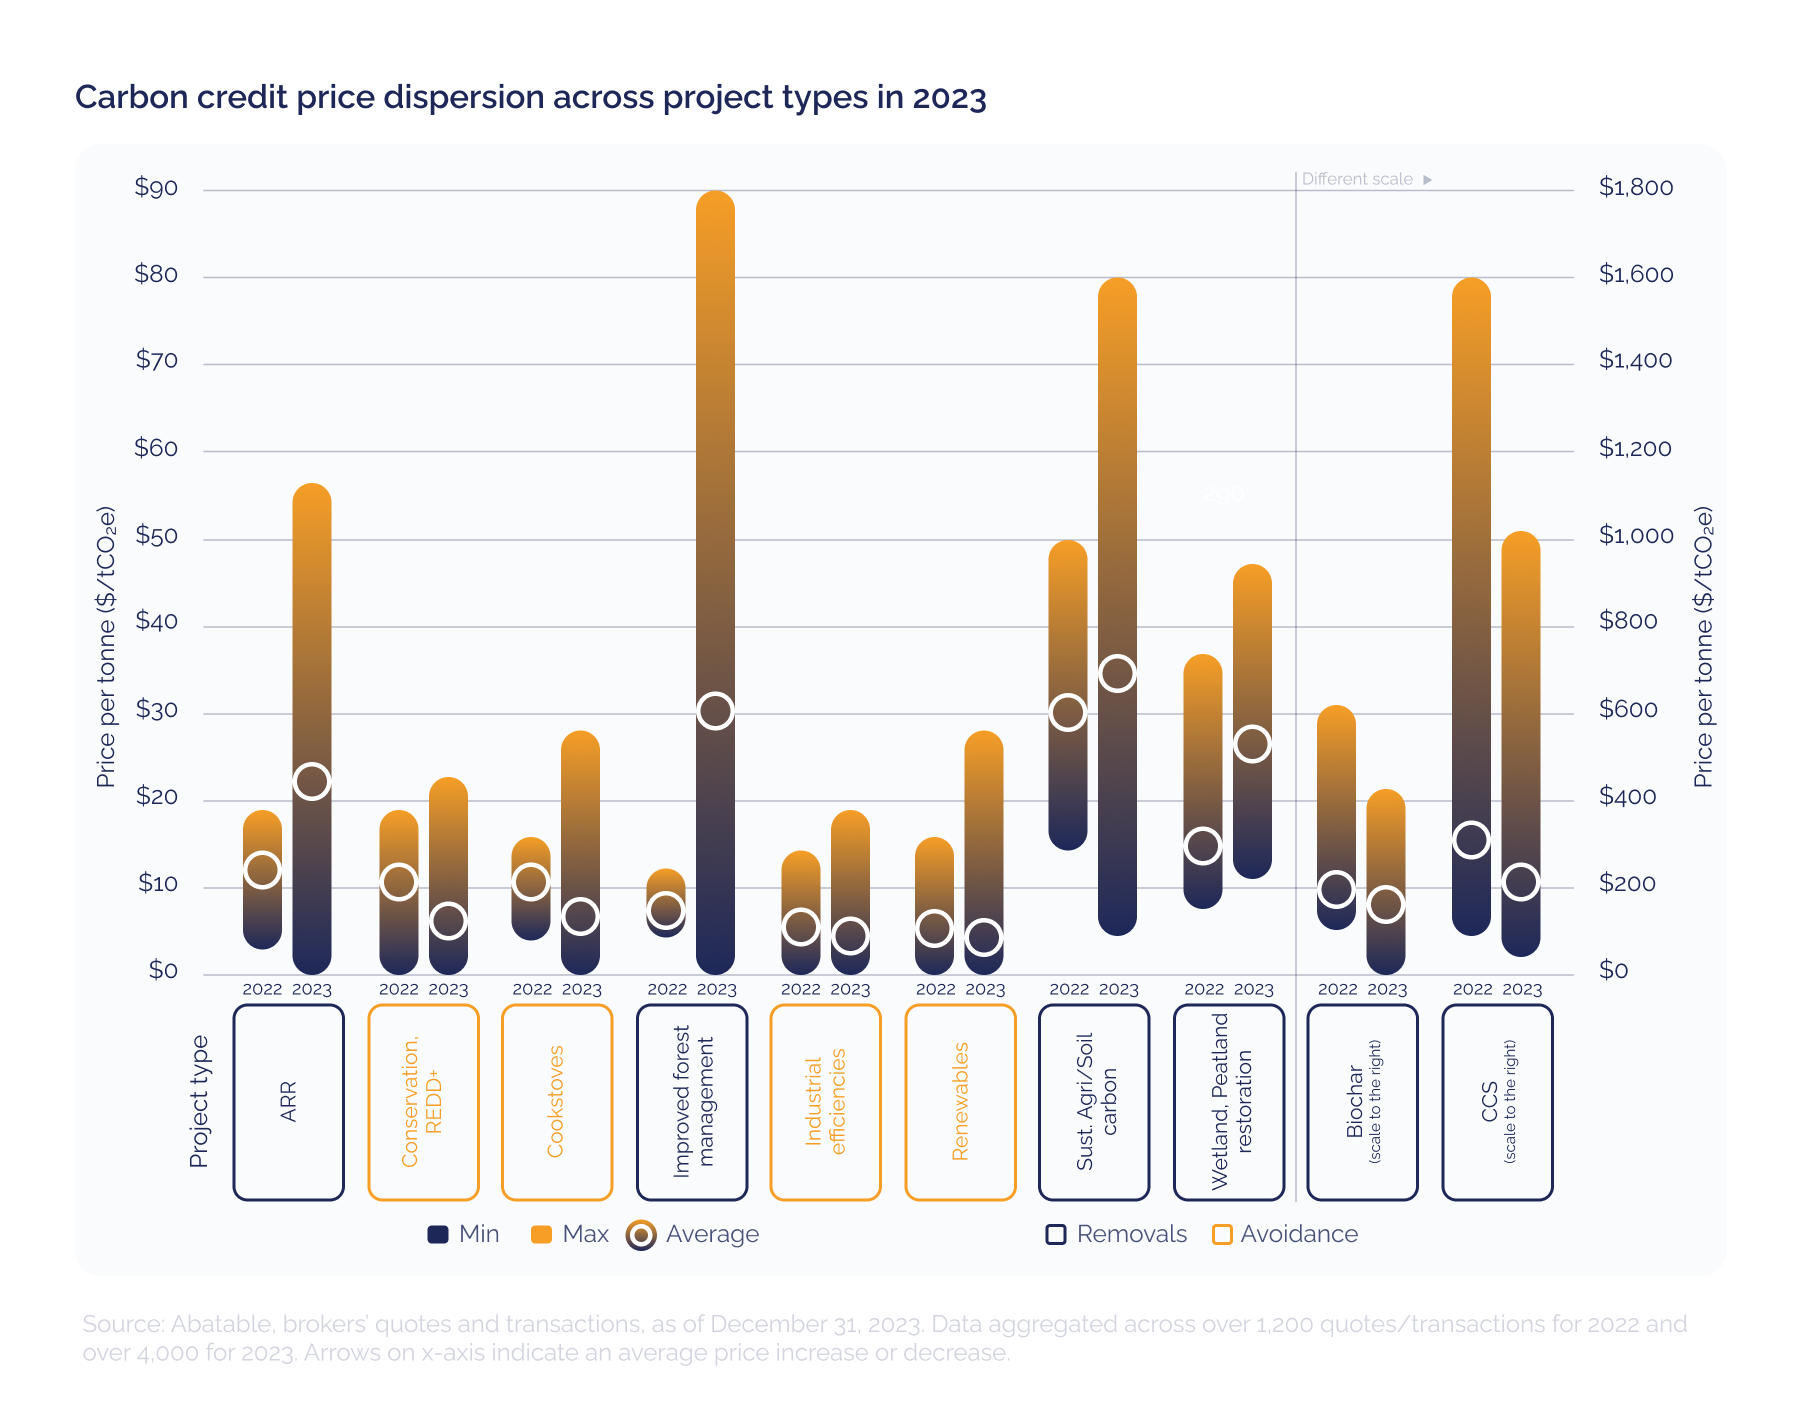 Prijsspreiding van koolstofkredieten over projecttypen in 2023